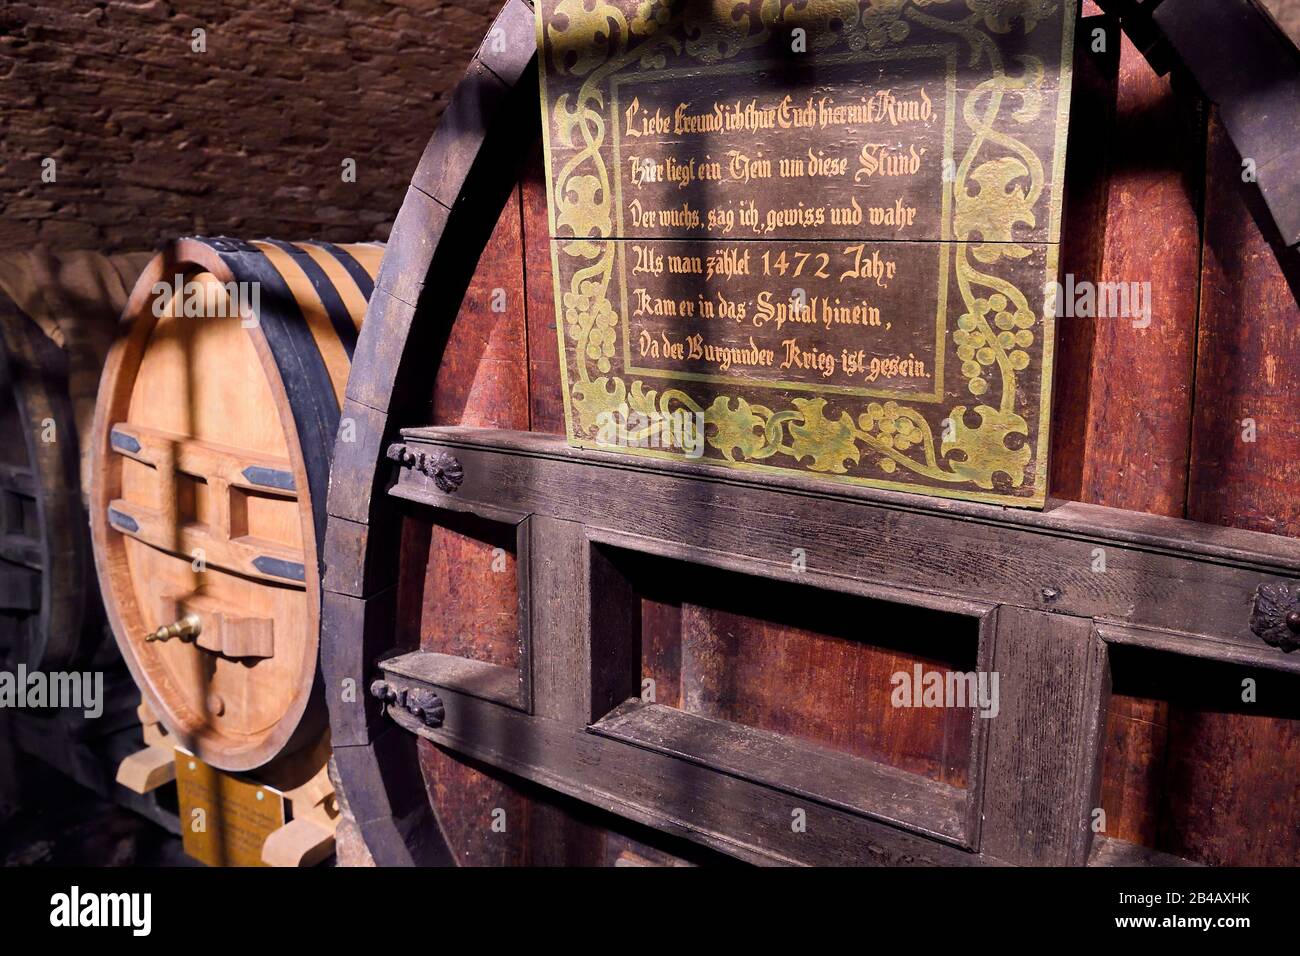 Frankreich, Bas Rhin, Strasbourg, Altstadt, die von der UNESCO zum Weltkulturerbe erklärt wurde, das Bürgerspital, Der Historische Keller des Hospices de Strasbourg, das Fass Wein aus dem Jahr 1472, der älteste noch in Fass gehaltene Weißwein der Welt wurde links in das Fass überführt Stockfoto